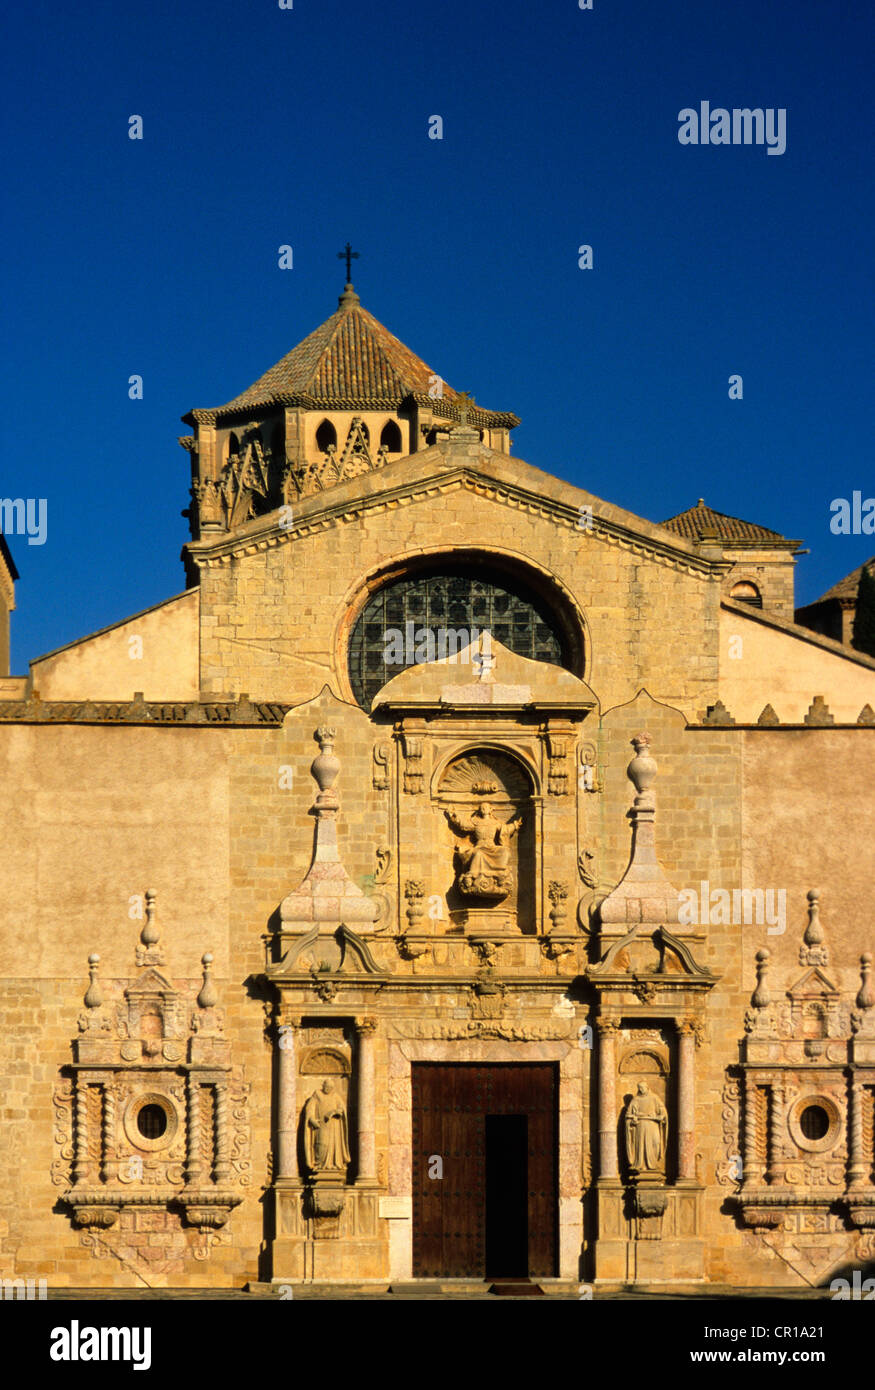 España Cataluña provincia Tarragona Conca de Barberà comarca Vimbodi La ruta del Cister Monasterio de Santa Maria de Poblet enumerados Foto de stock